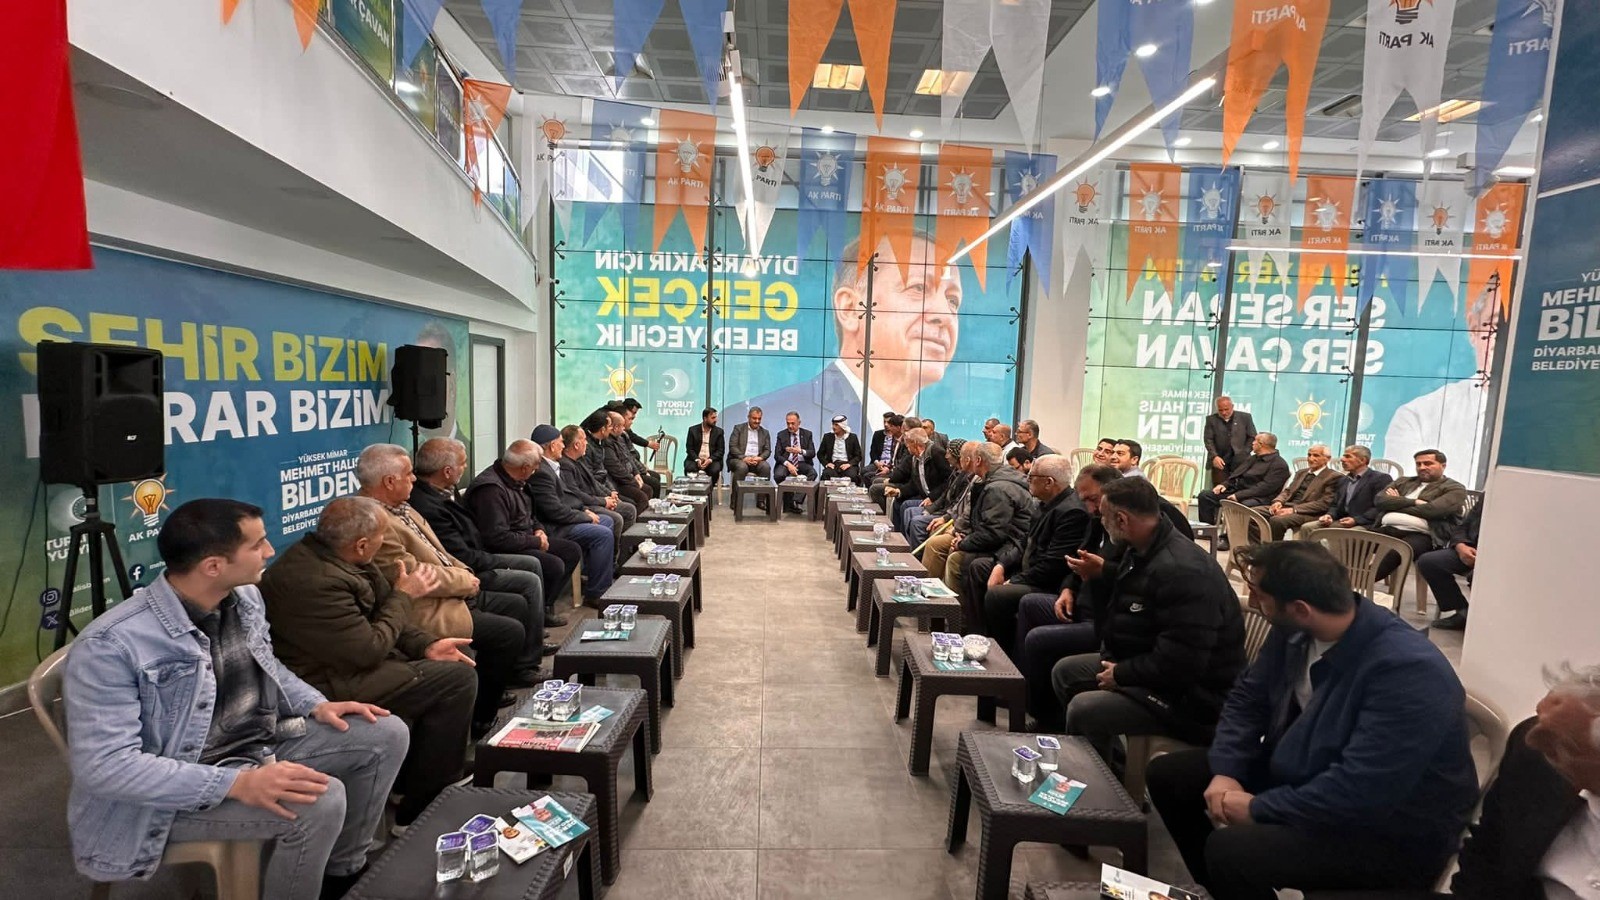 AK Parti Diyarbakır Belediye Başkan Adayı Bilden: “ Turizm anlamında Diyarbakır’da bir patlama bekliyoruz”